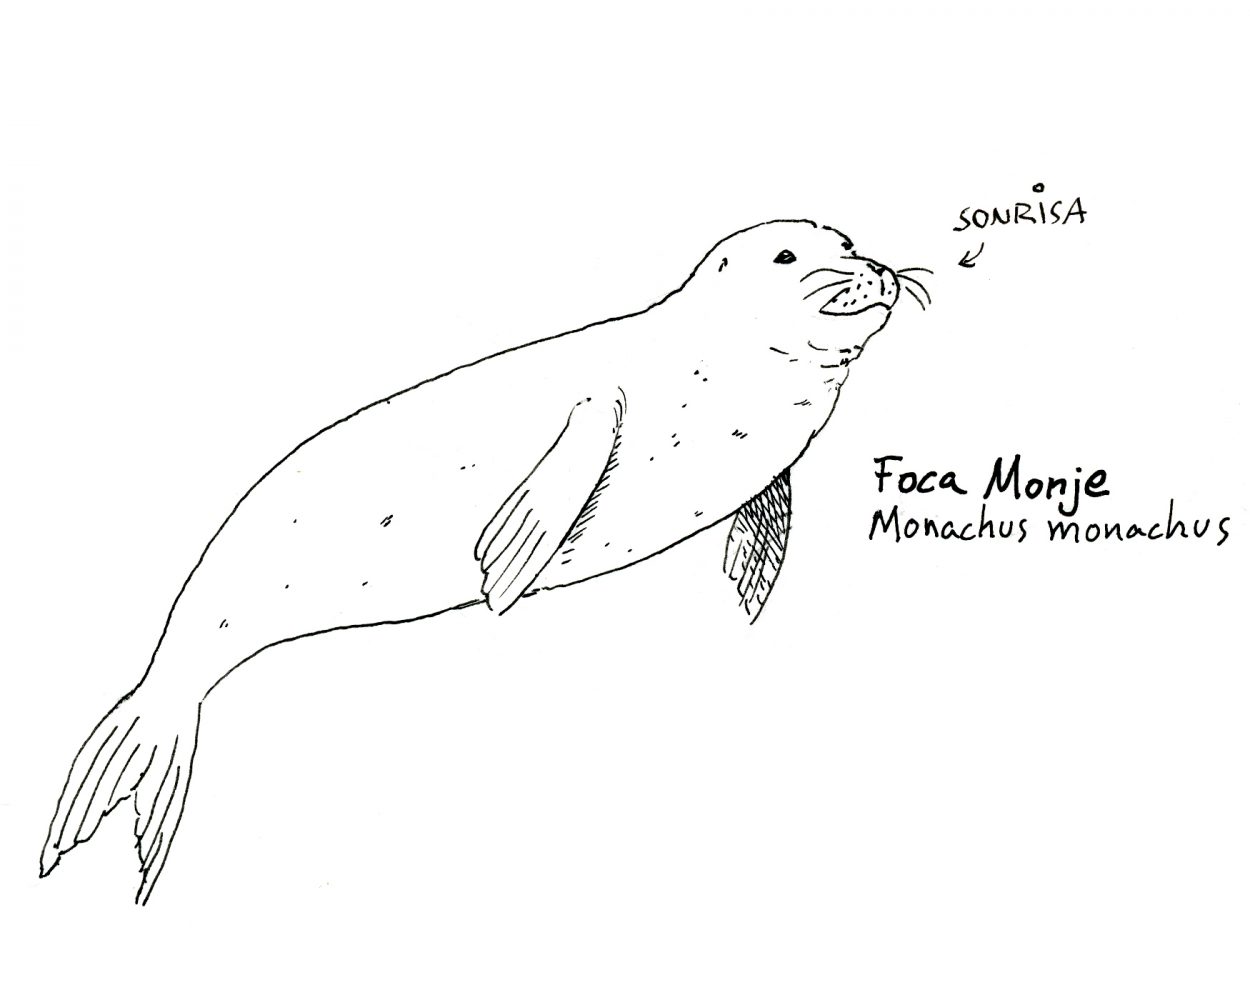 dibujo blanco y negro de una foca monje, monachus monachus